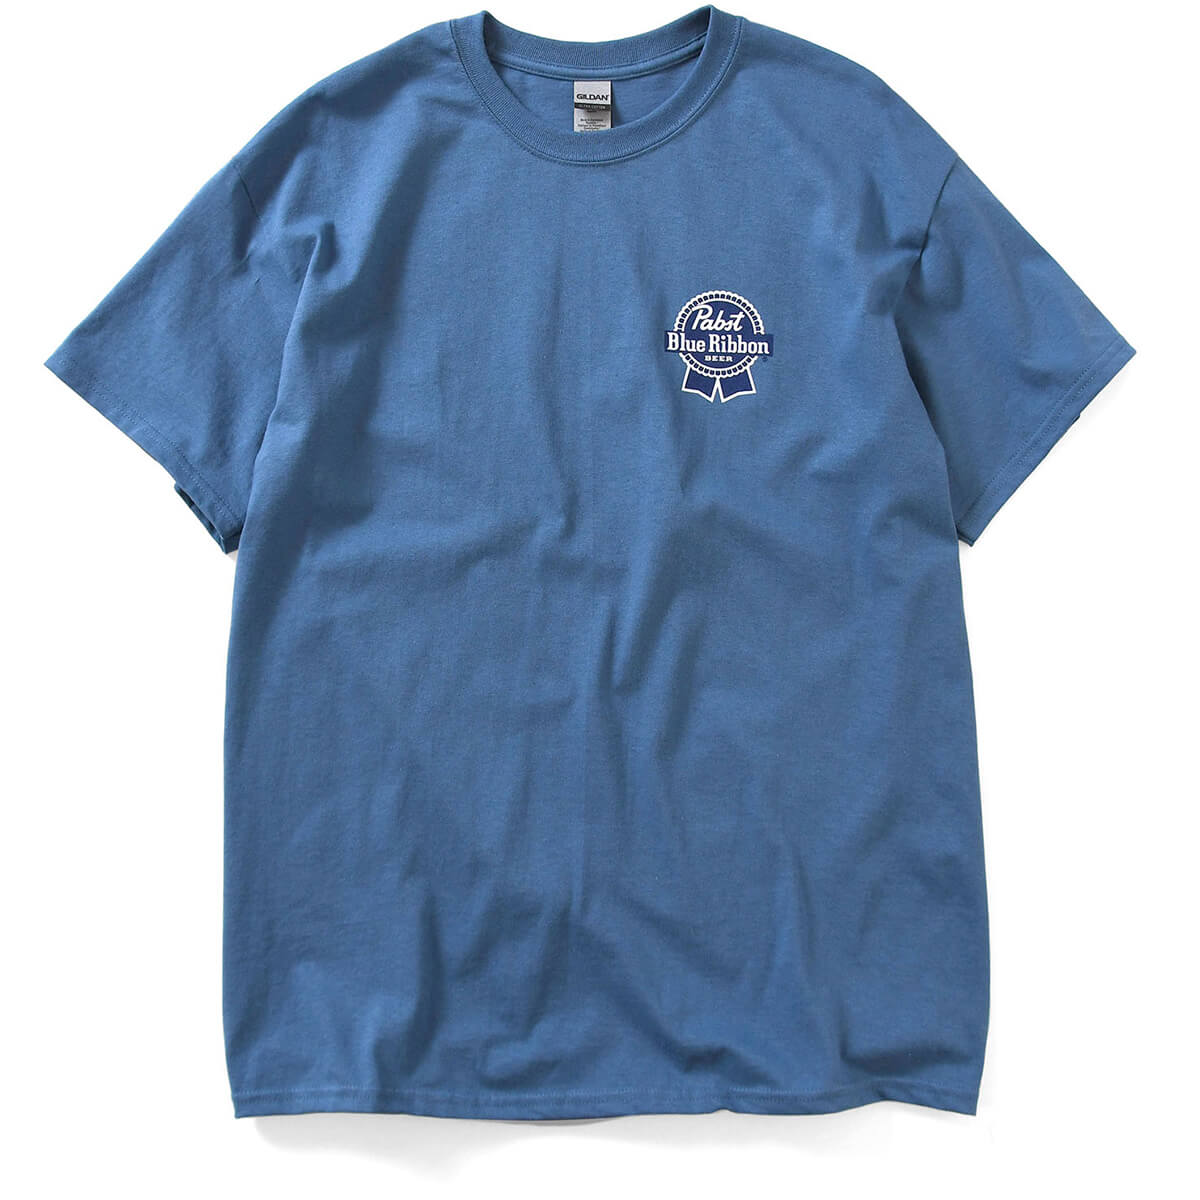 PABST BLUE RIBBON パブストブルーリボン ビール 半袖 Tシャツ メンズ ストリート ロゴ 公式 オフィシャルグッズ ブランド INDIGO インディゴ ORIGINAL LOGO TEE ★★